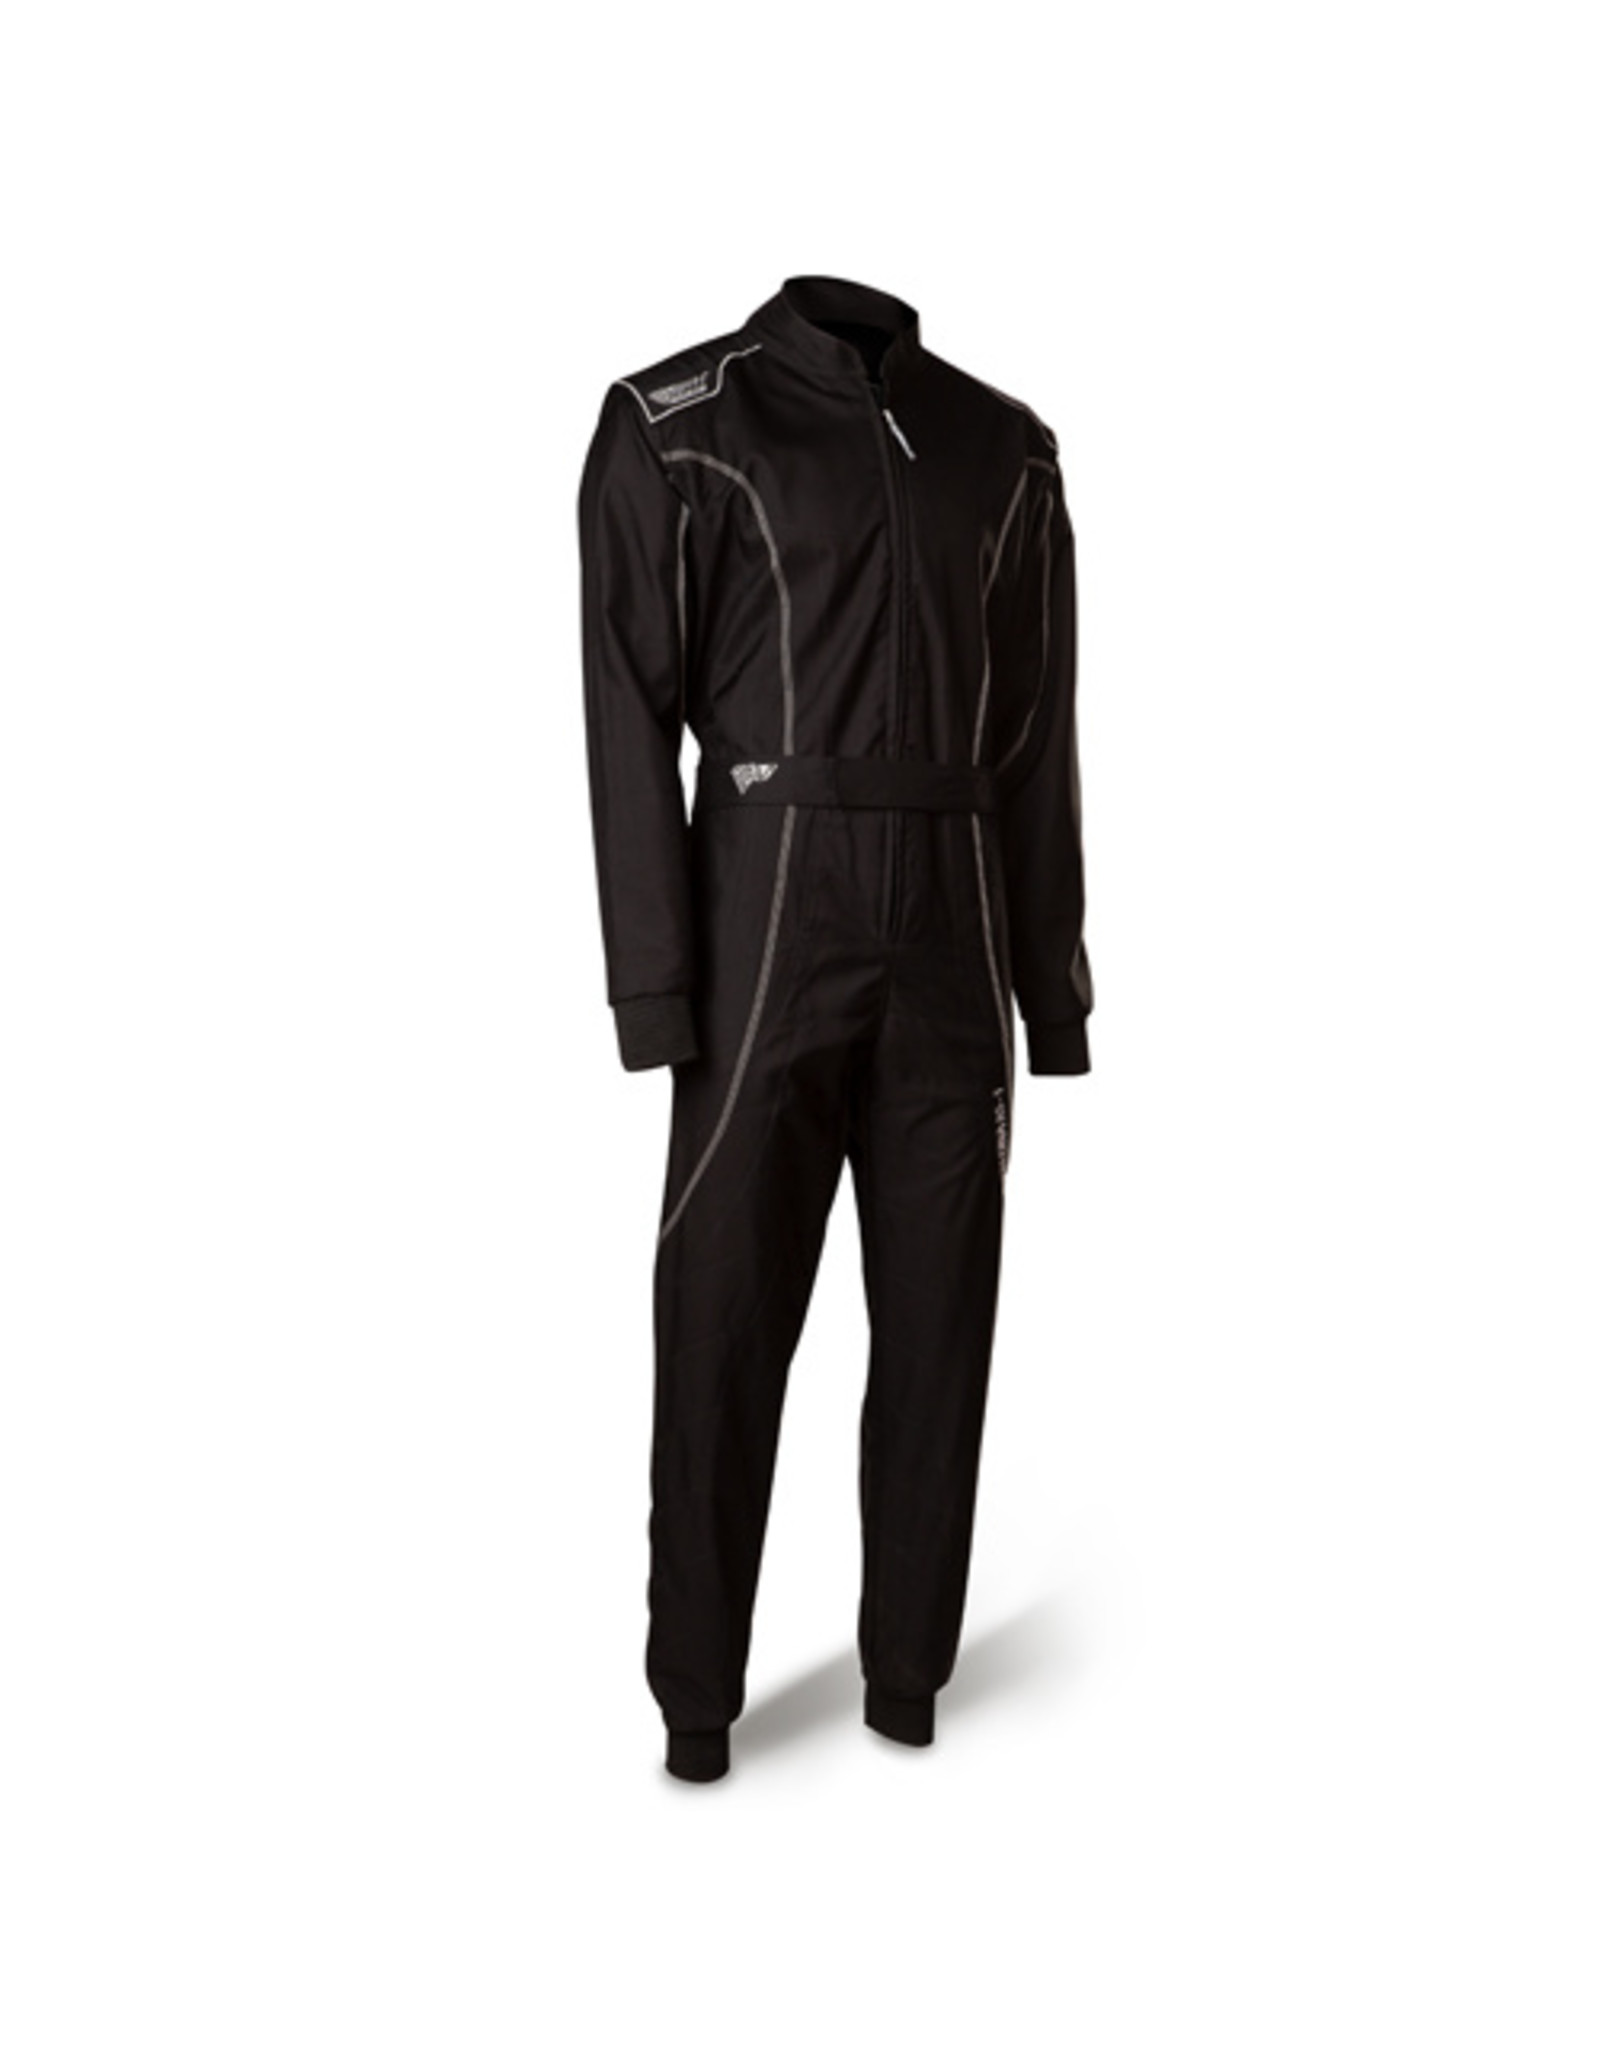 Speed Racewear Speed LVL2 suit RS-1 Barcelona black